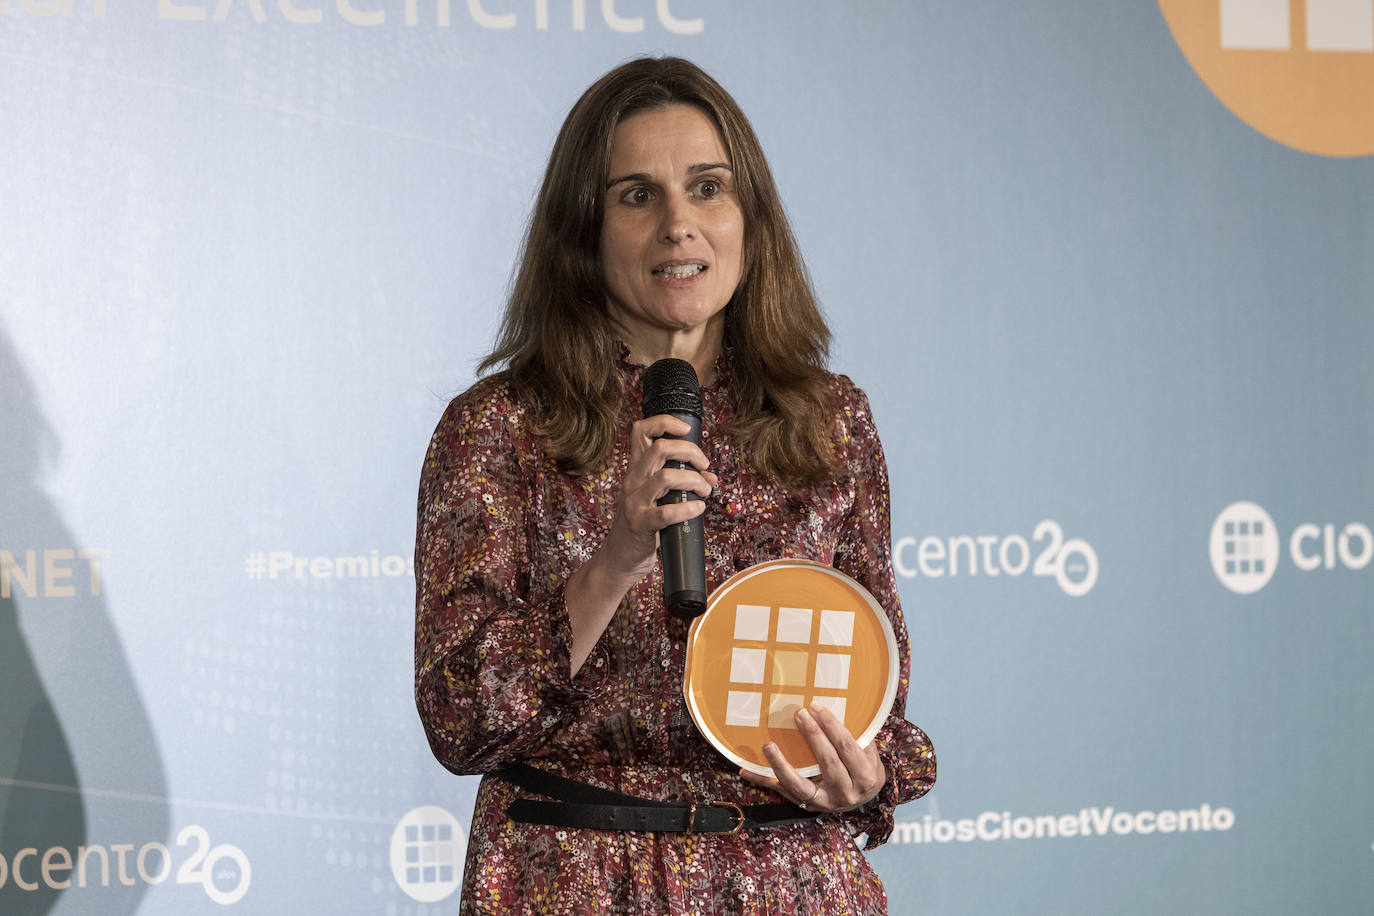 En la Categoría ESG Environmental, Social & Governance, el premio fue para Coca Cola Europacific Partners. Marta Font Gerente de Medio Ambiente y Sonia Blázquez Associate Director de IT en Iberia recogieron el premio.